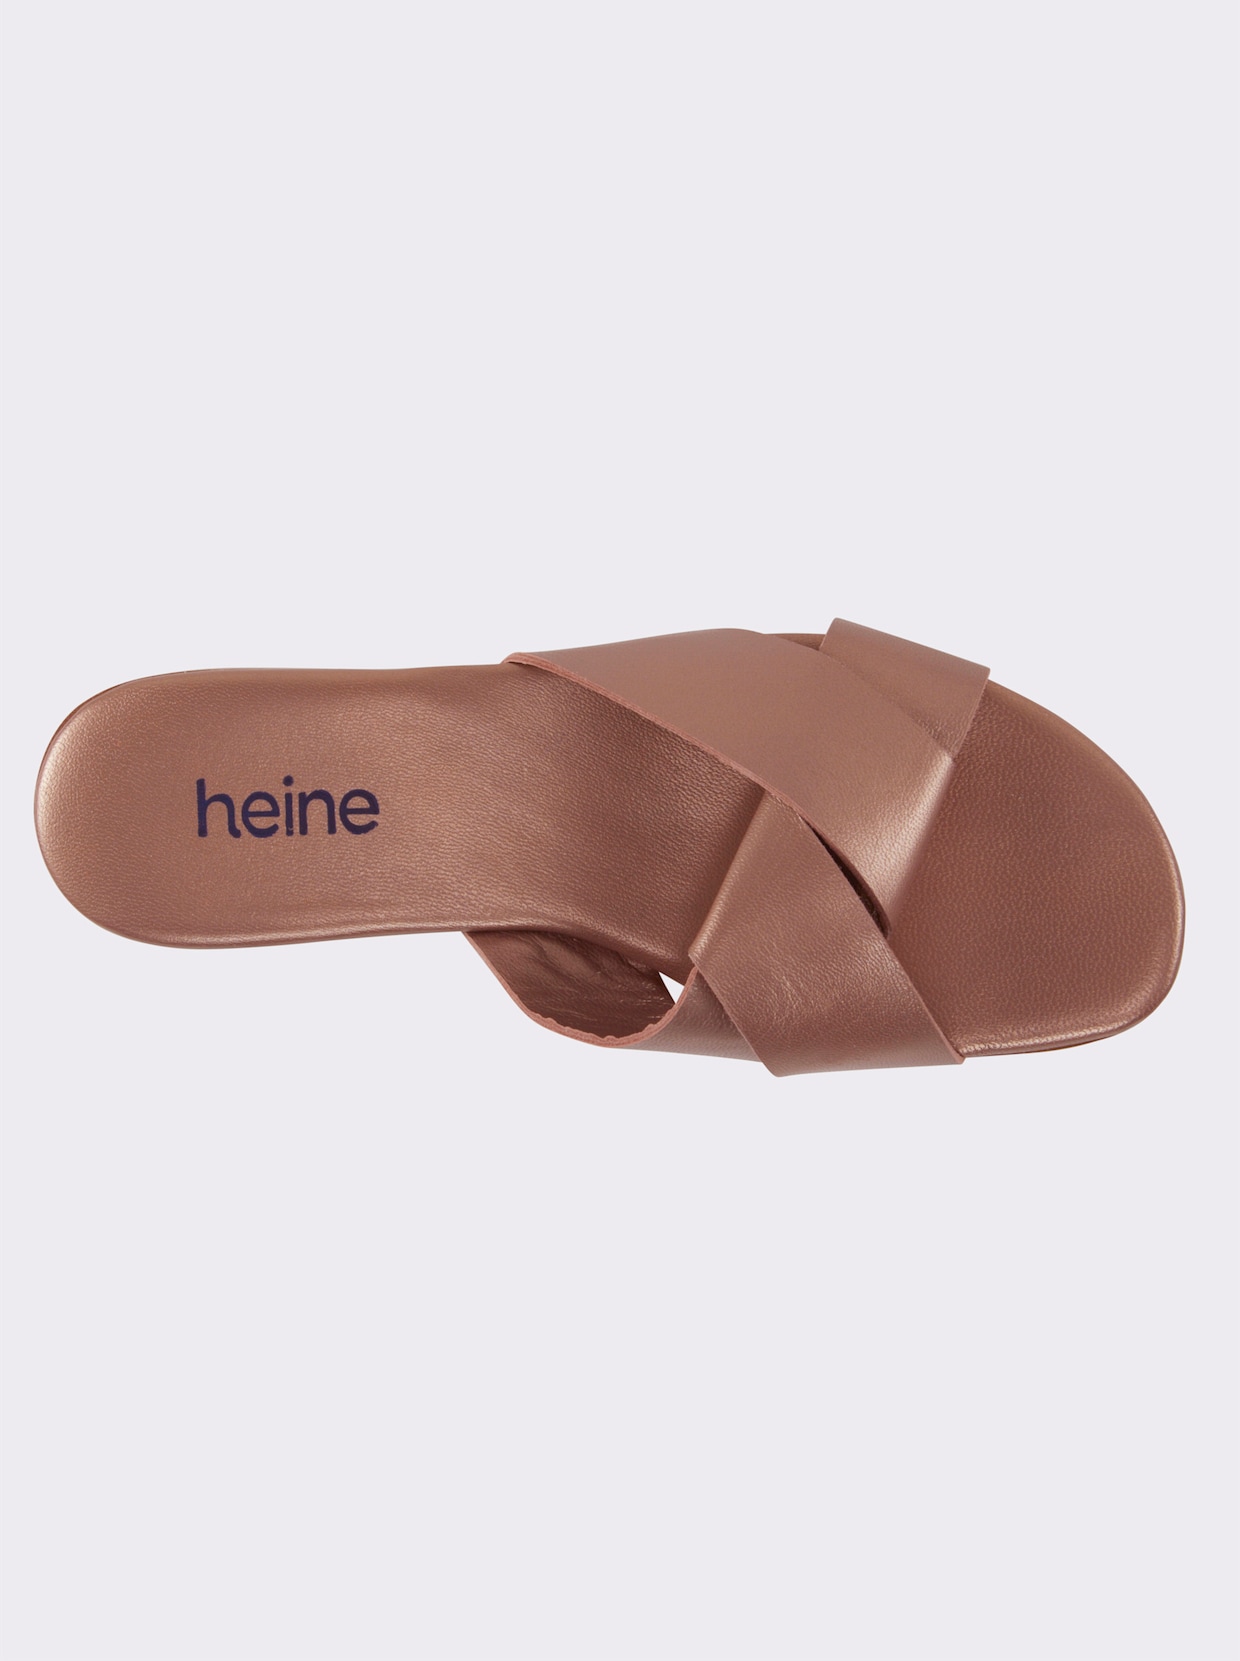 heine Slippers - rozenkwarts